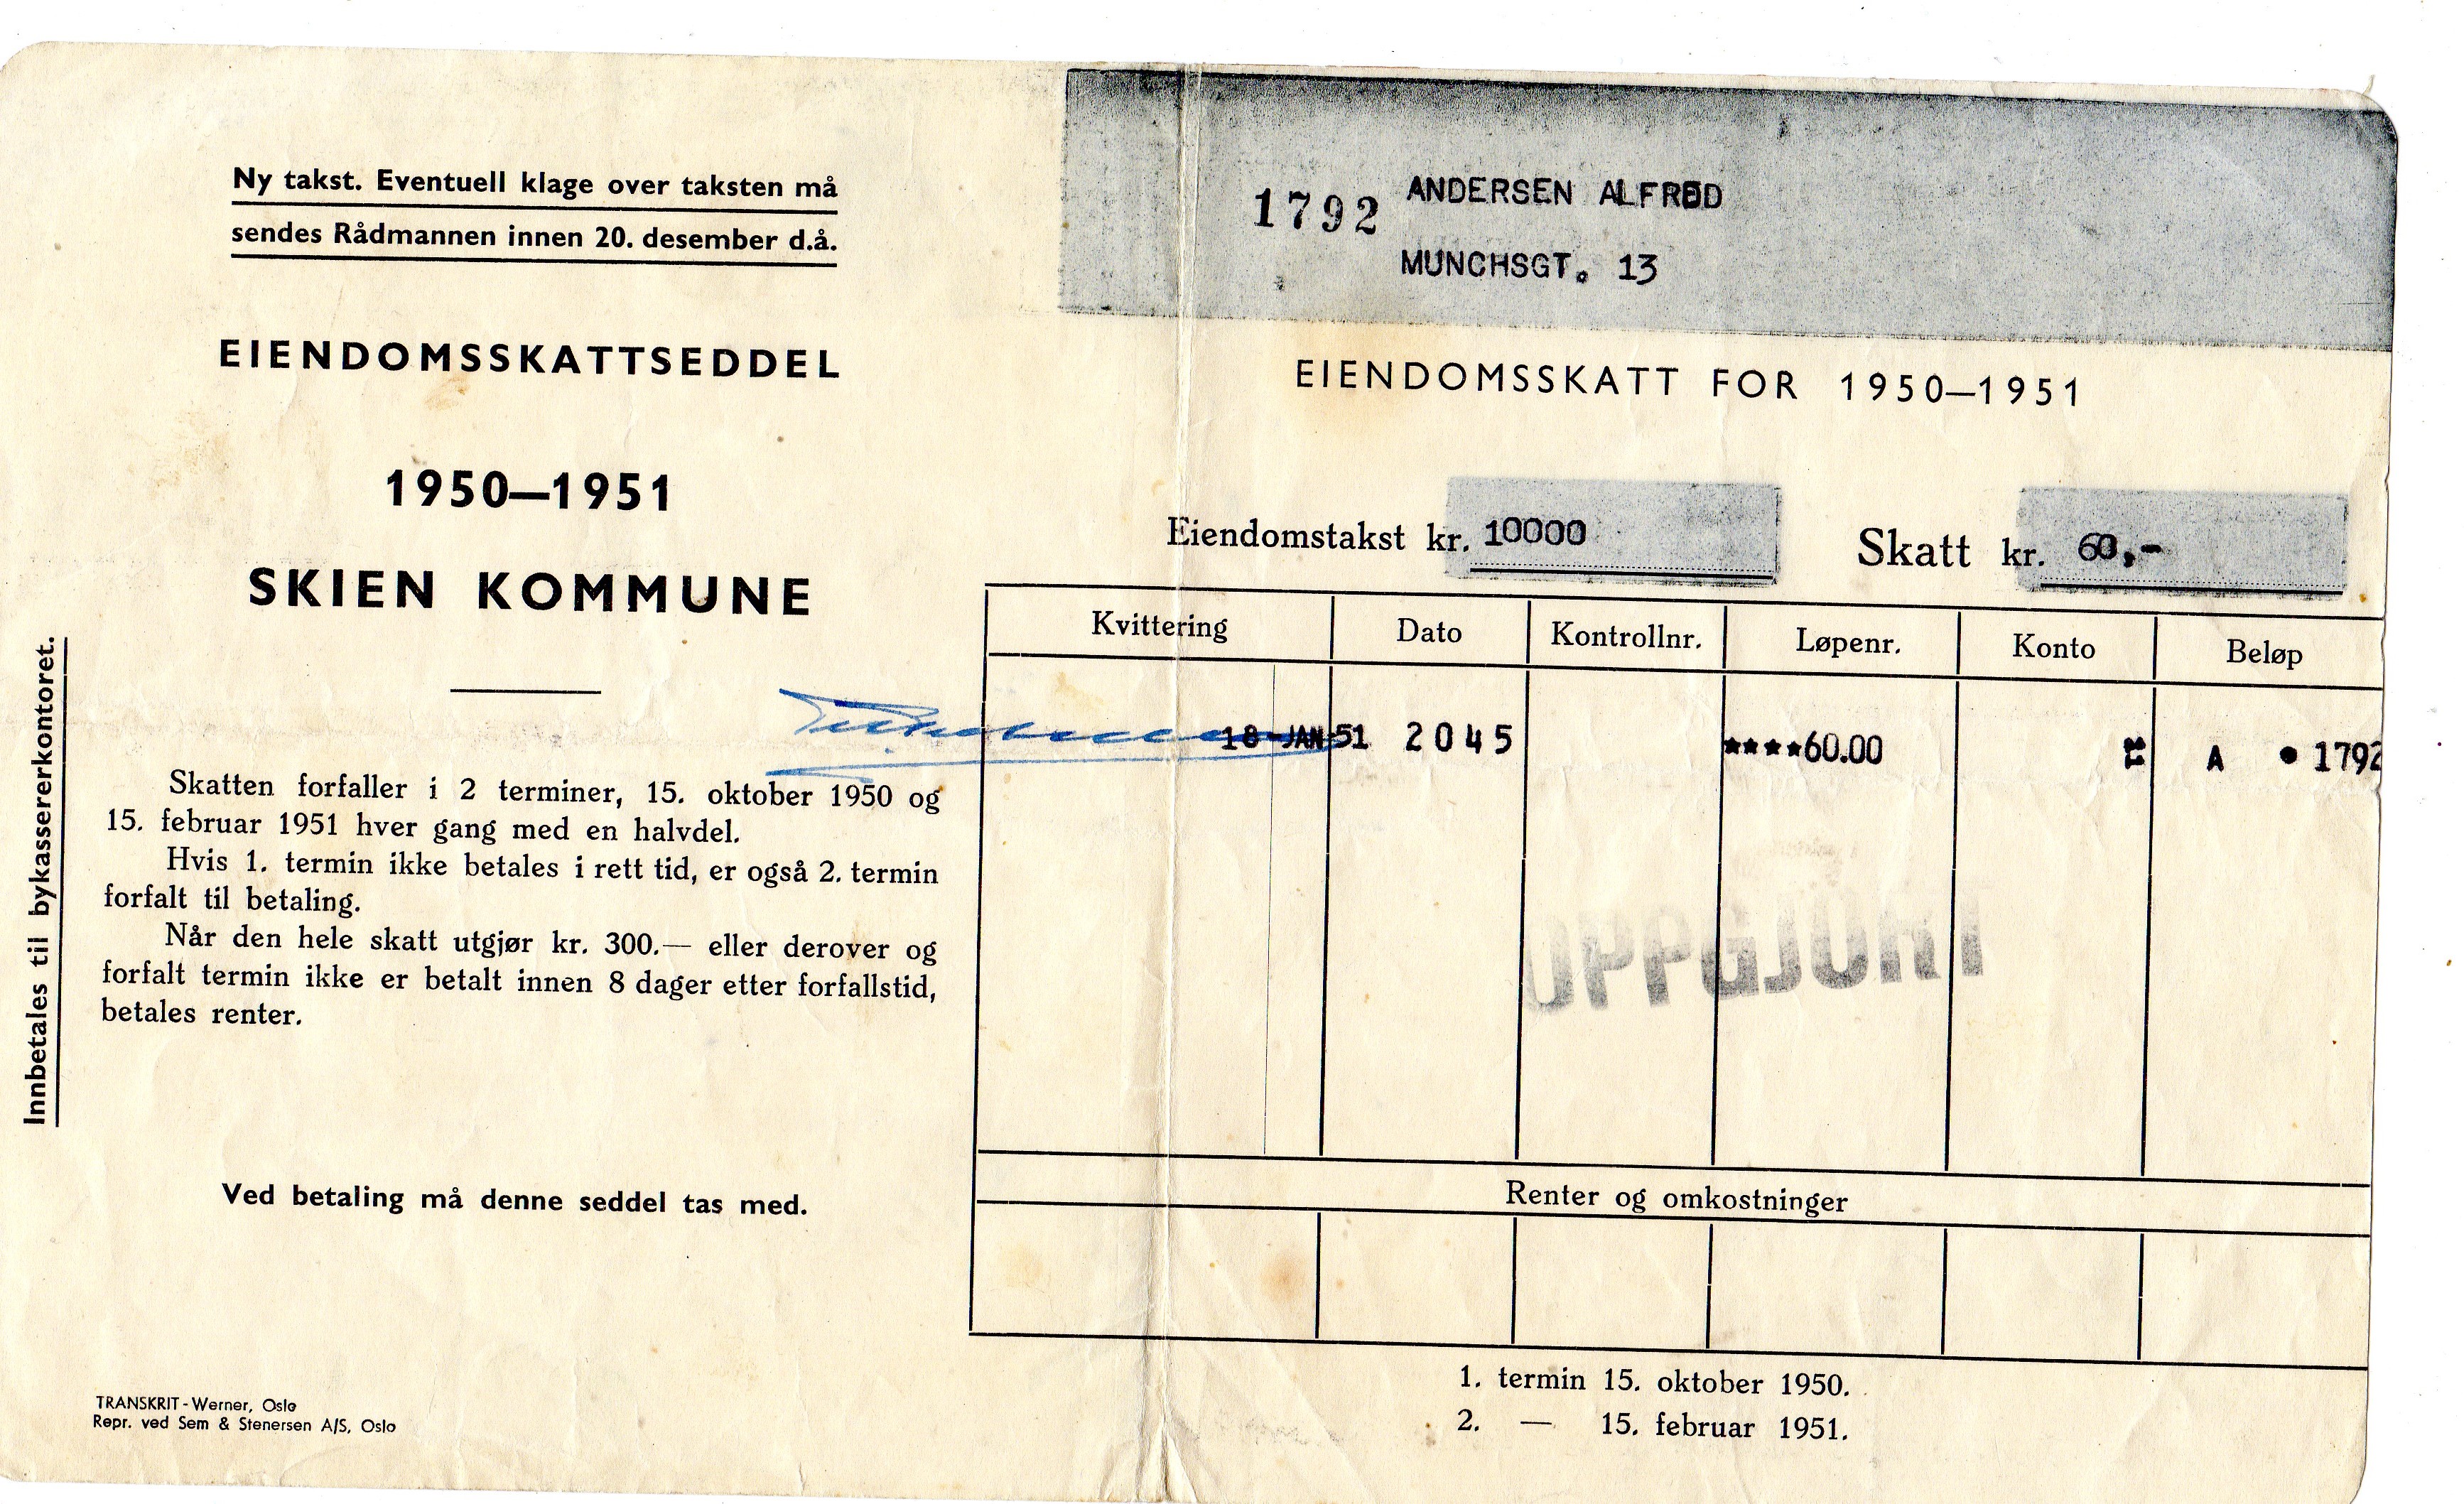 Eiendomsskatteseddel 1950-51